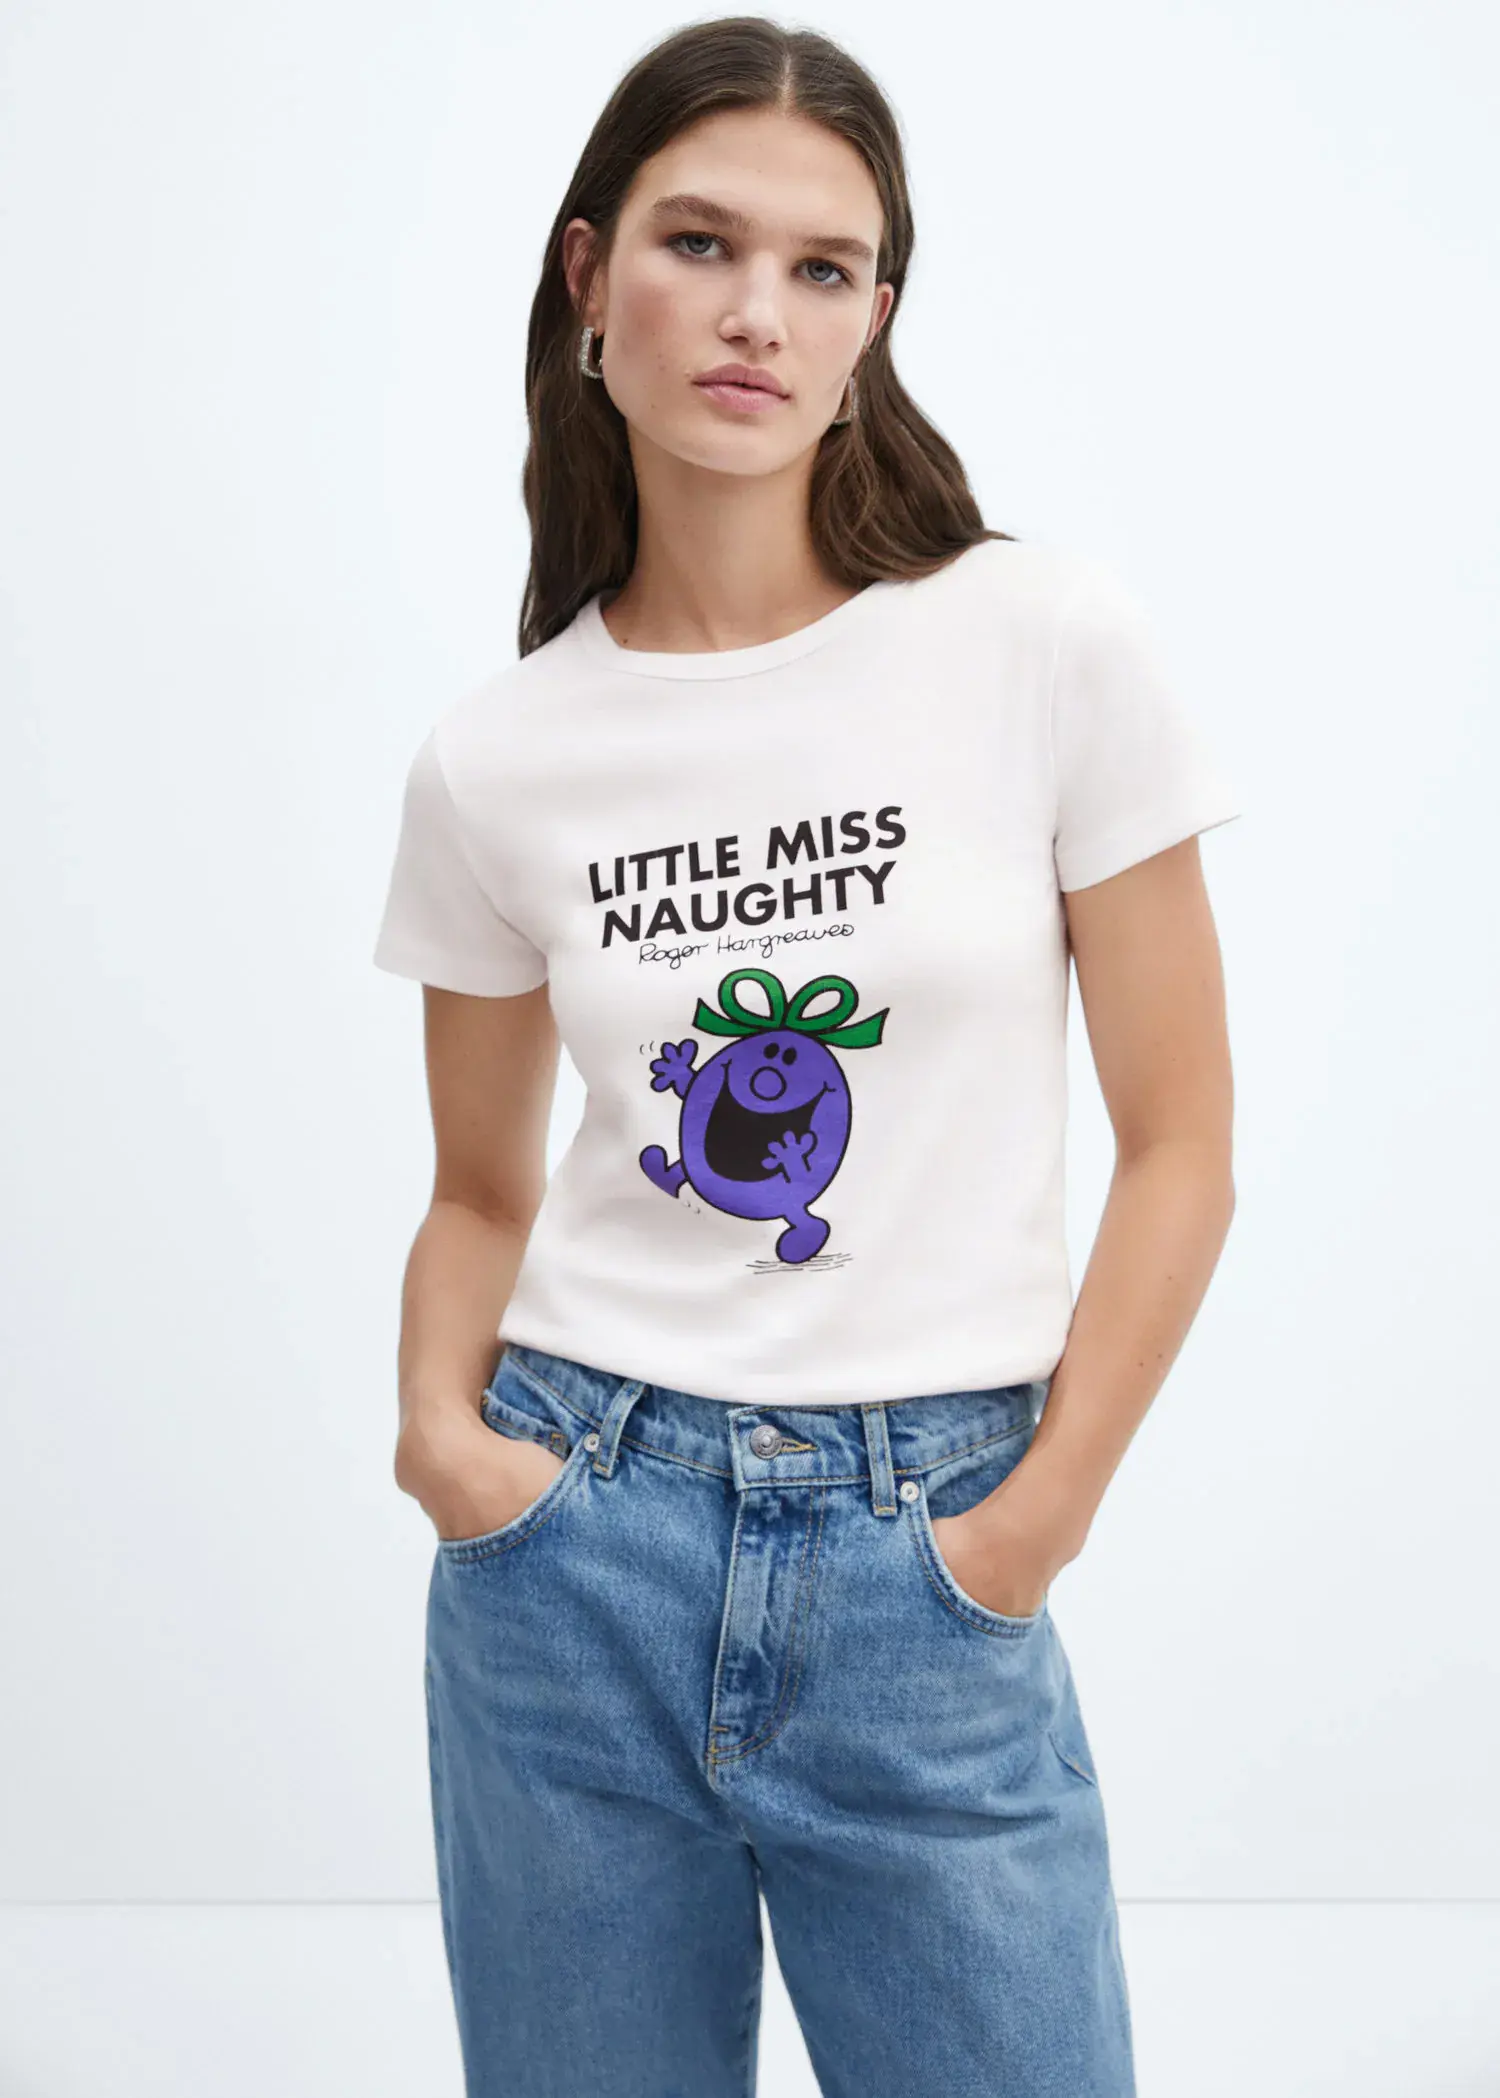 Mango Mr Men and Little Miss T-shirt. 1